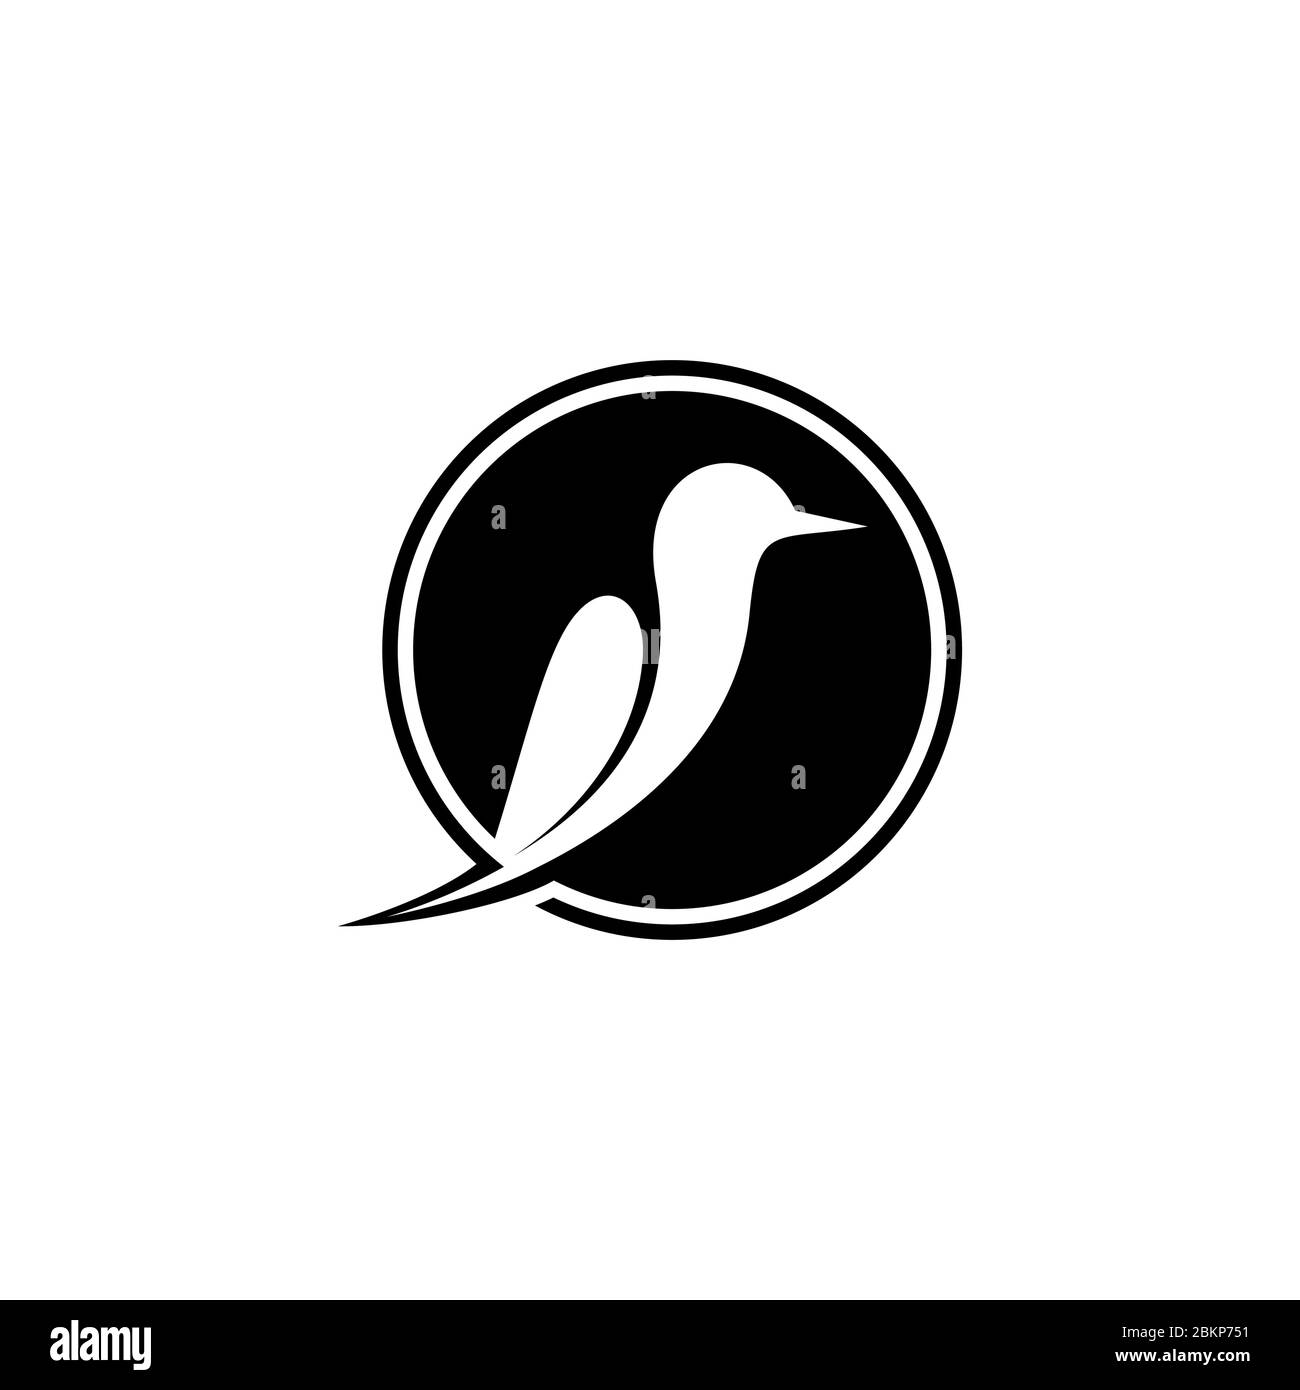 Modello creativo di logo grafico ad uccello, su concetto di design di spazio negativo, isolato su sfondo bianco. Illustrazione Vettoriale